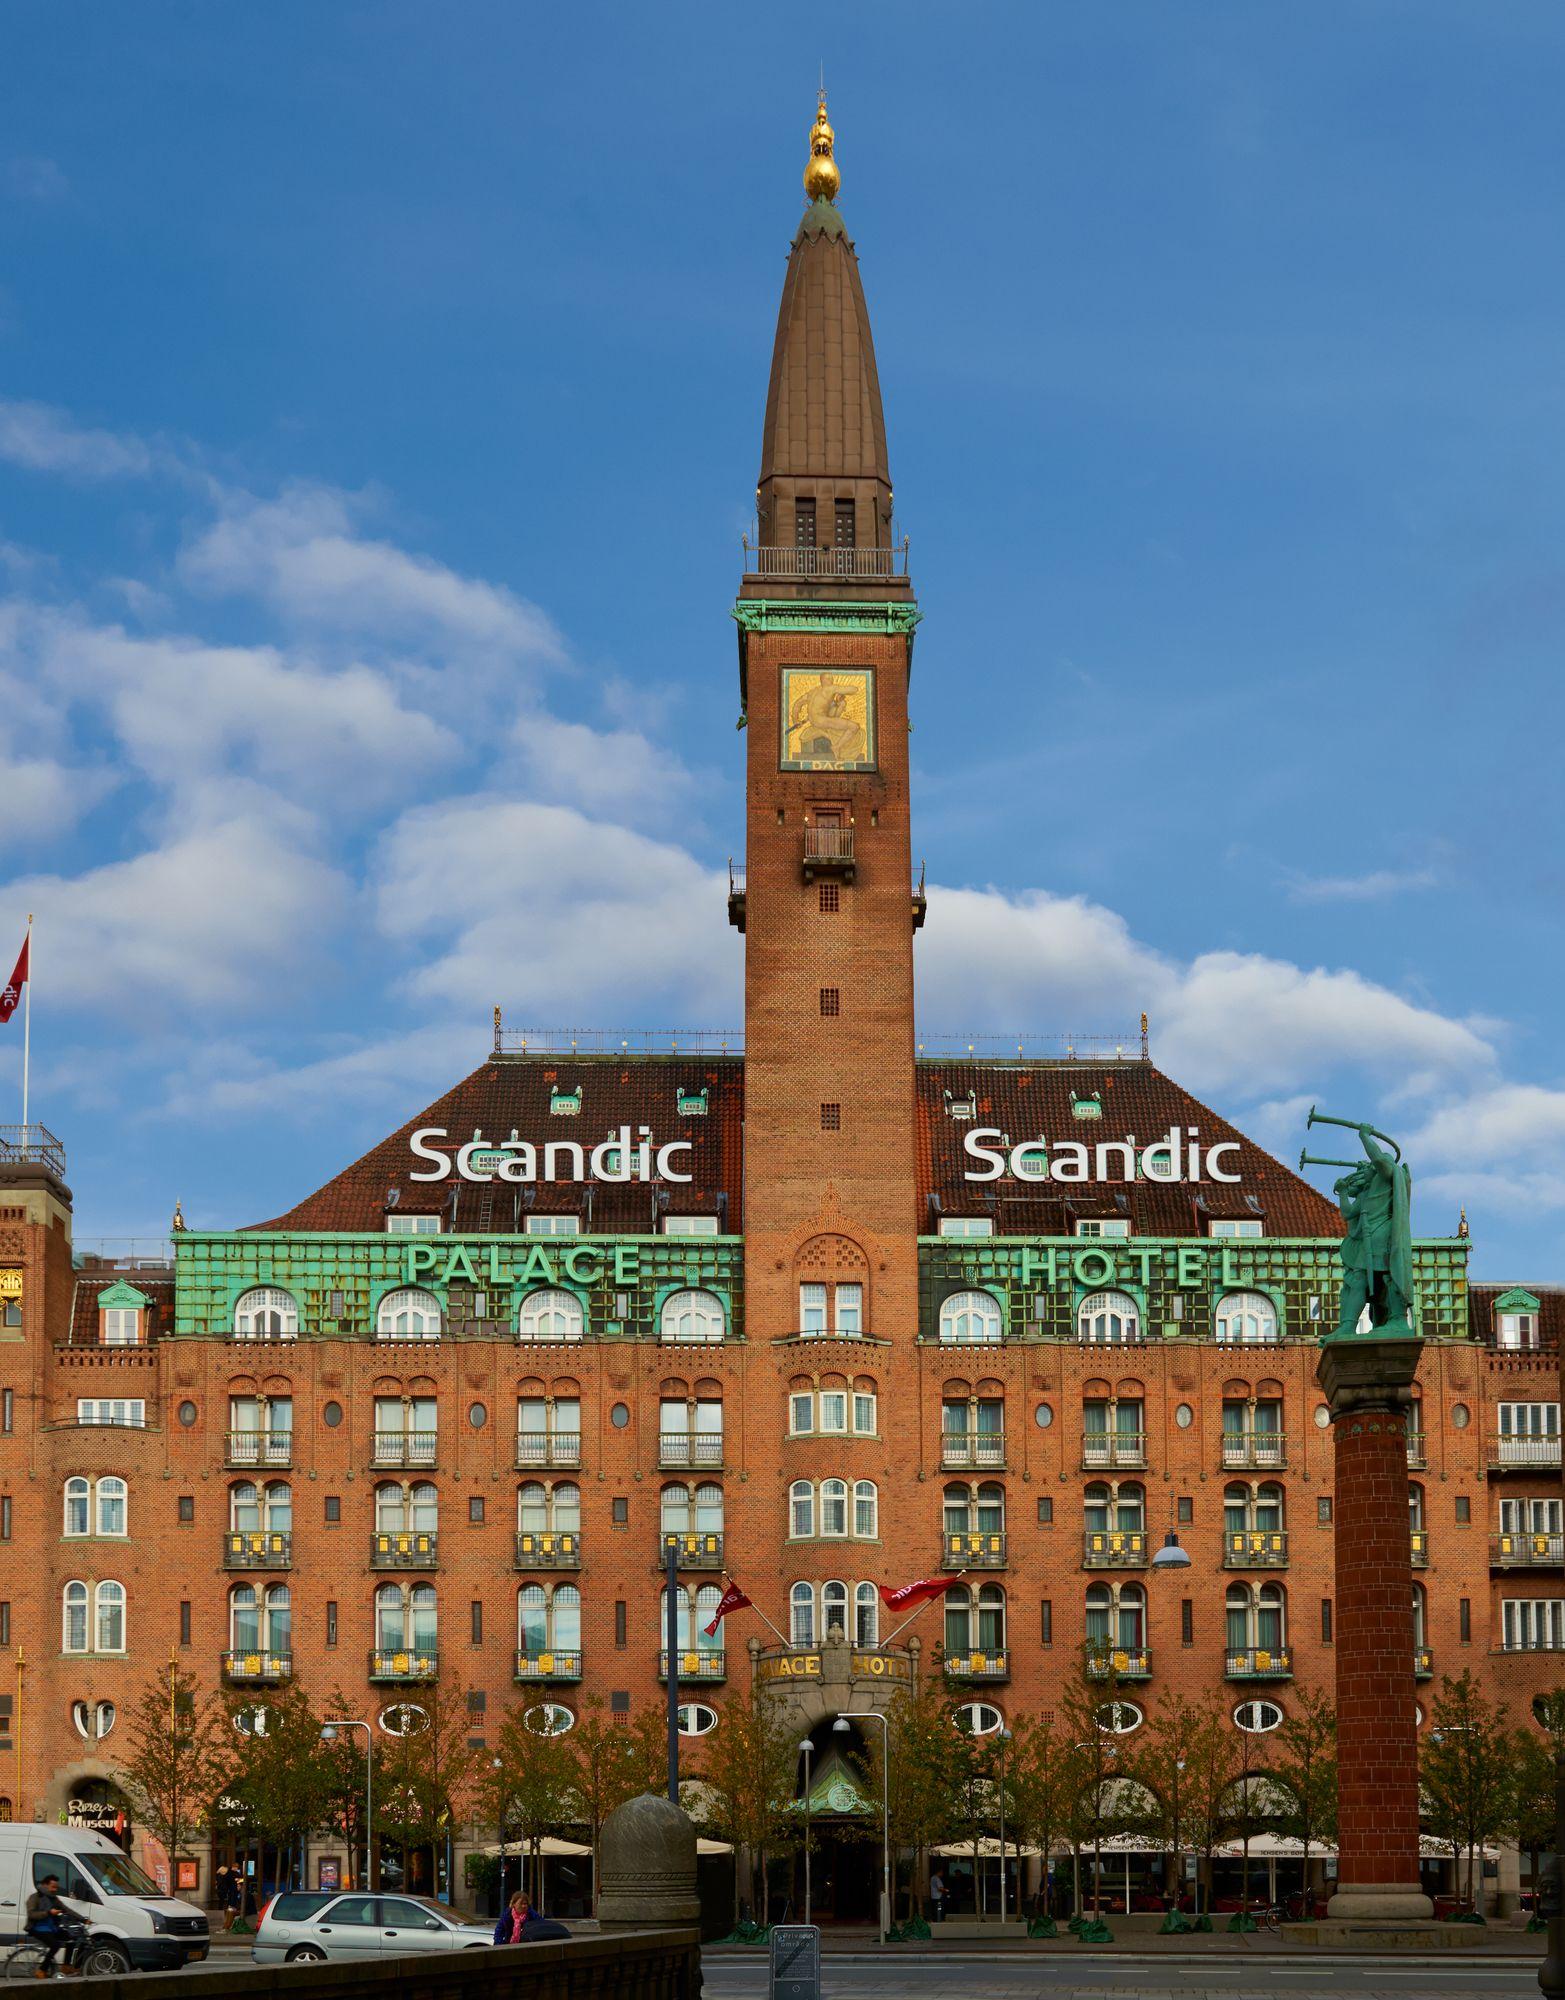 Variados (as) Scandic Palace Hotel